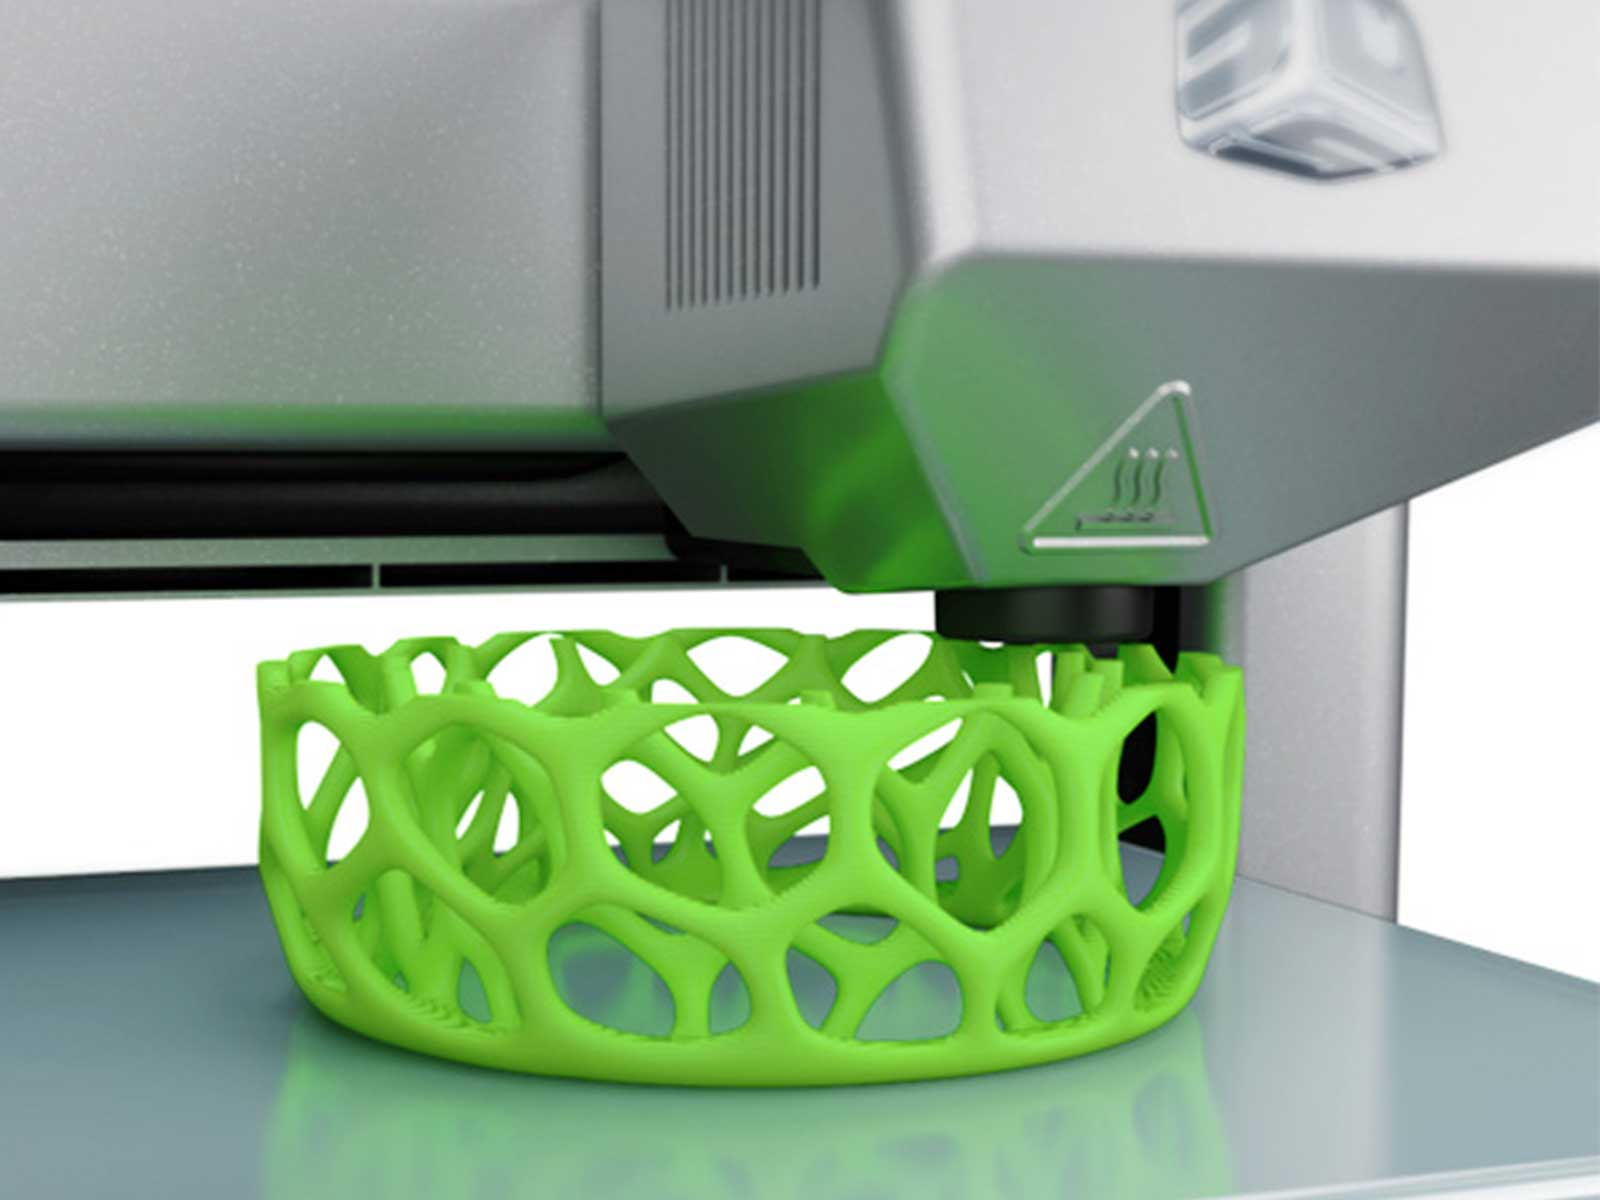 Cube 3D Printer close-up